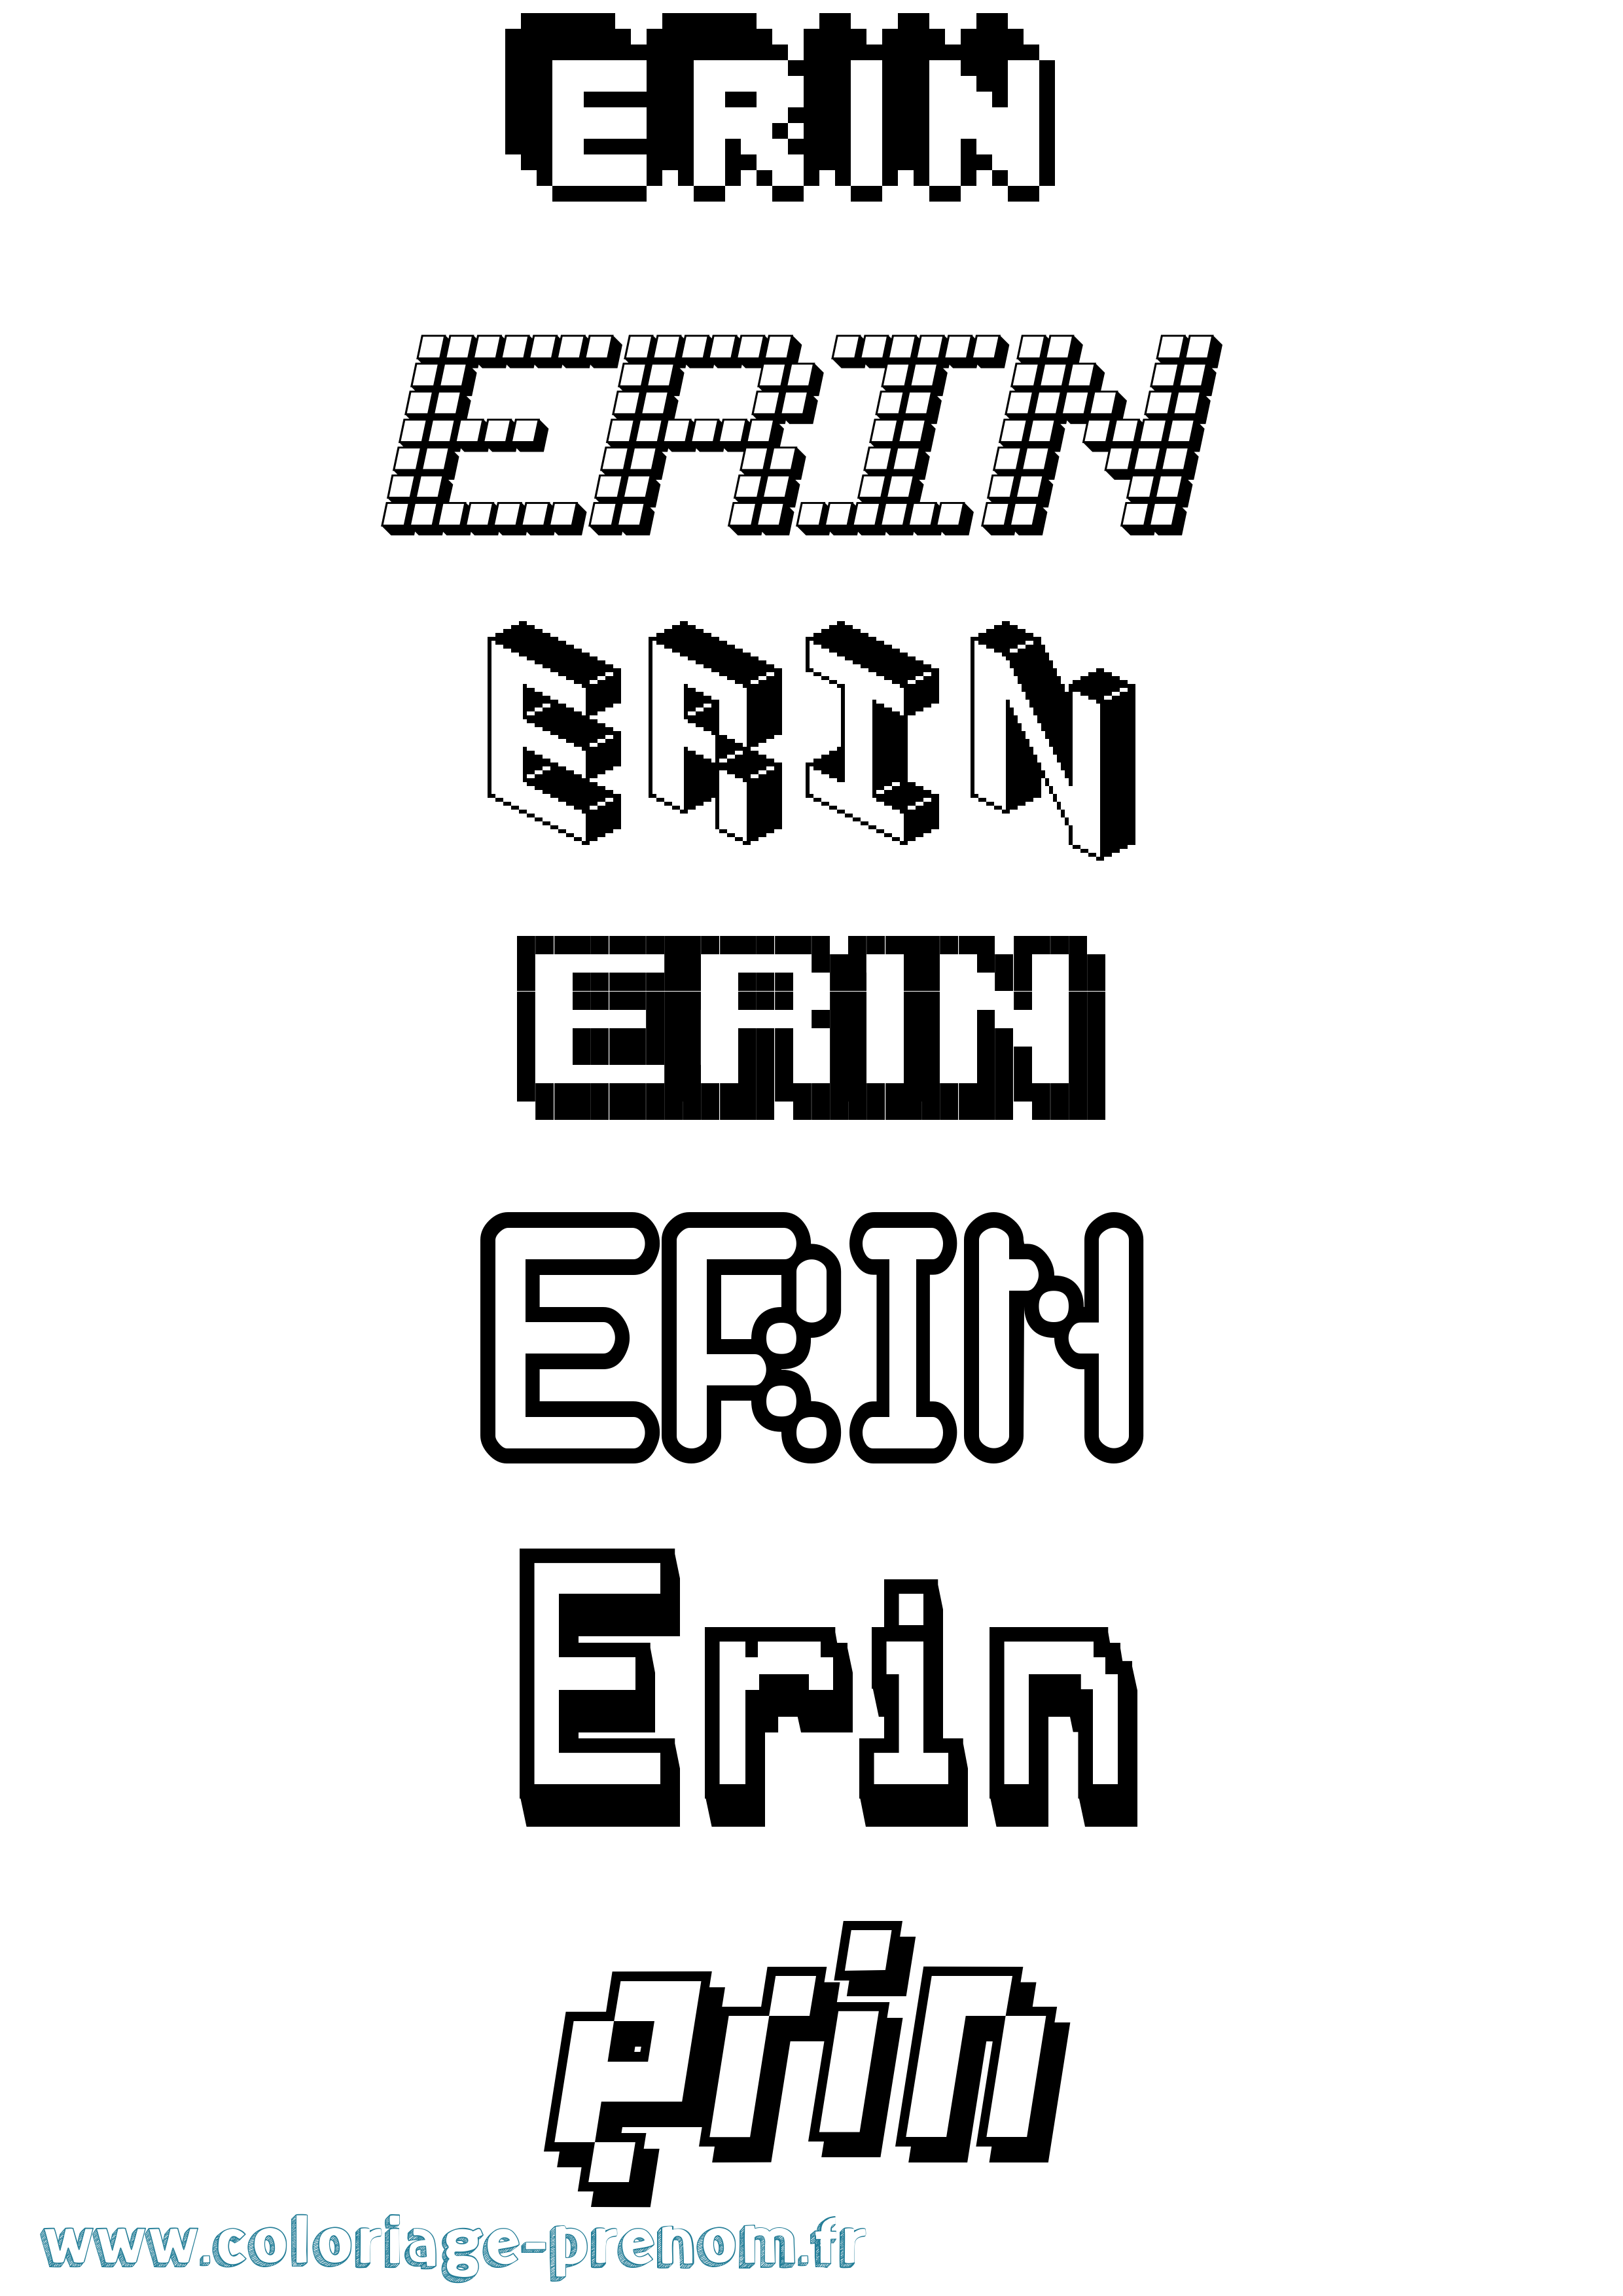 Coloriage prénom Erin Pixel